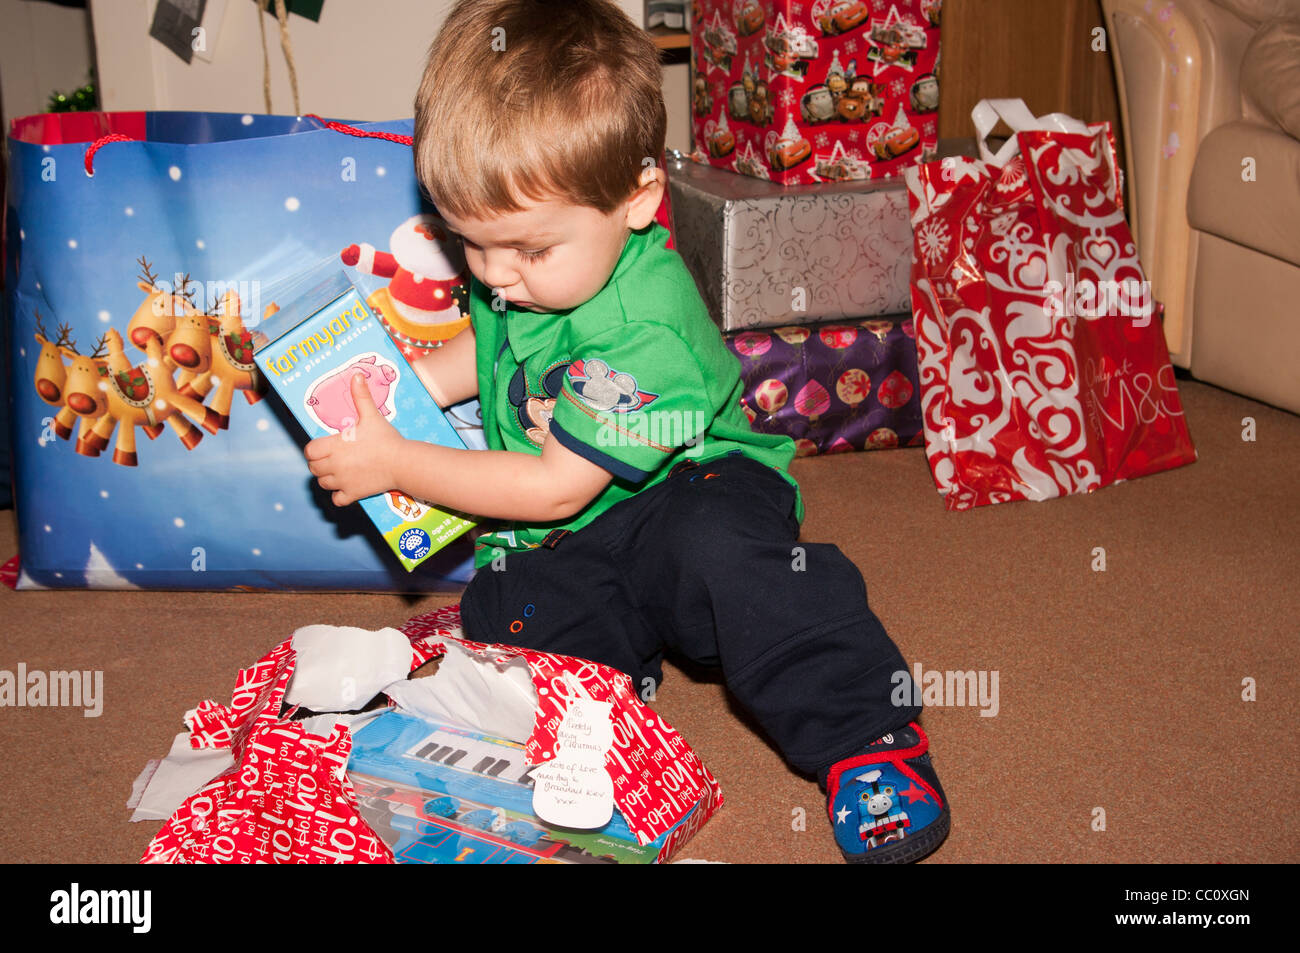 Niño de 2 años niño bebé niño abriendo un regalo de Navidad